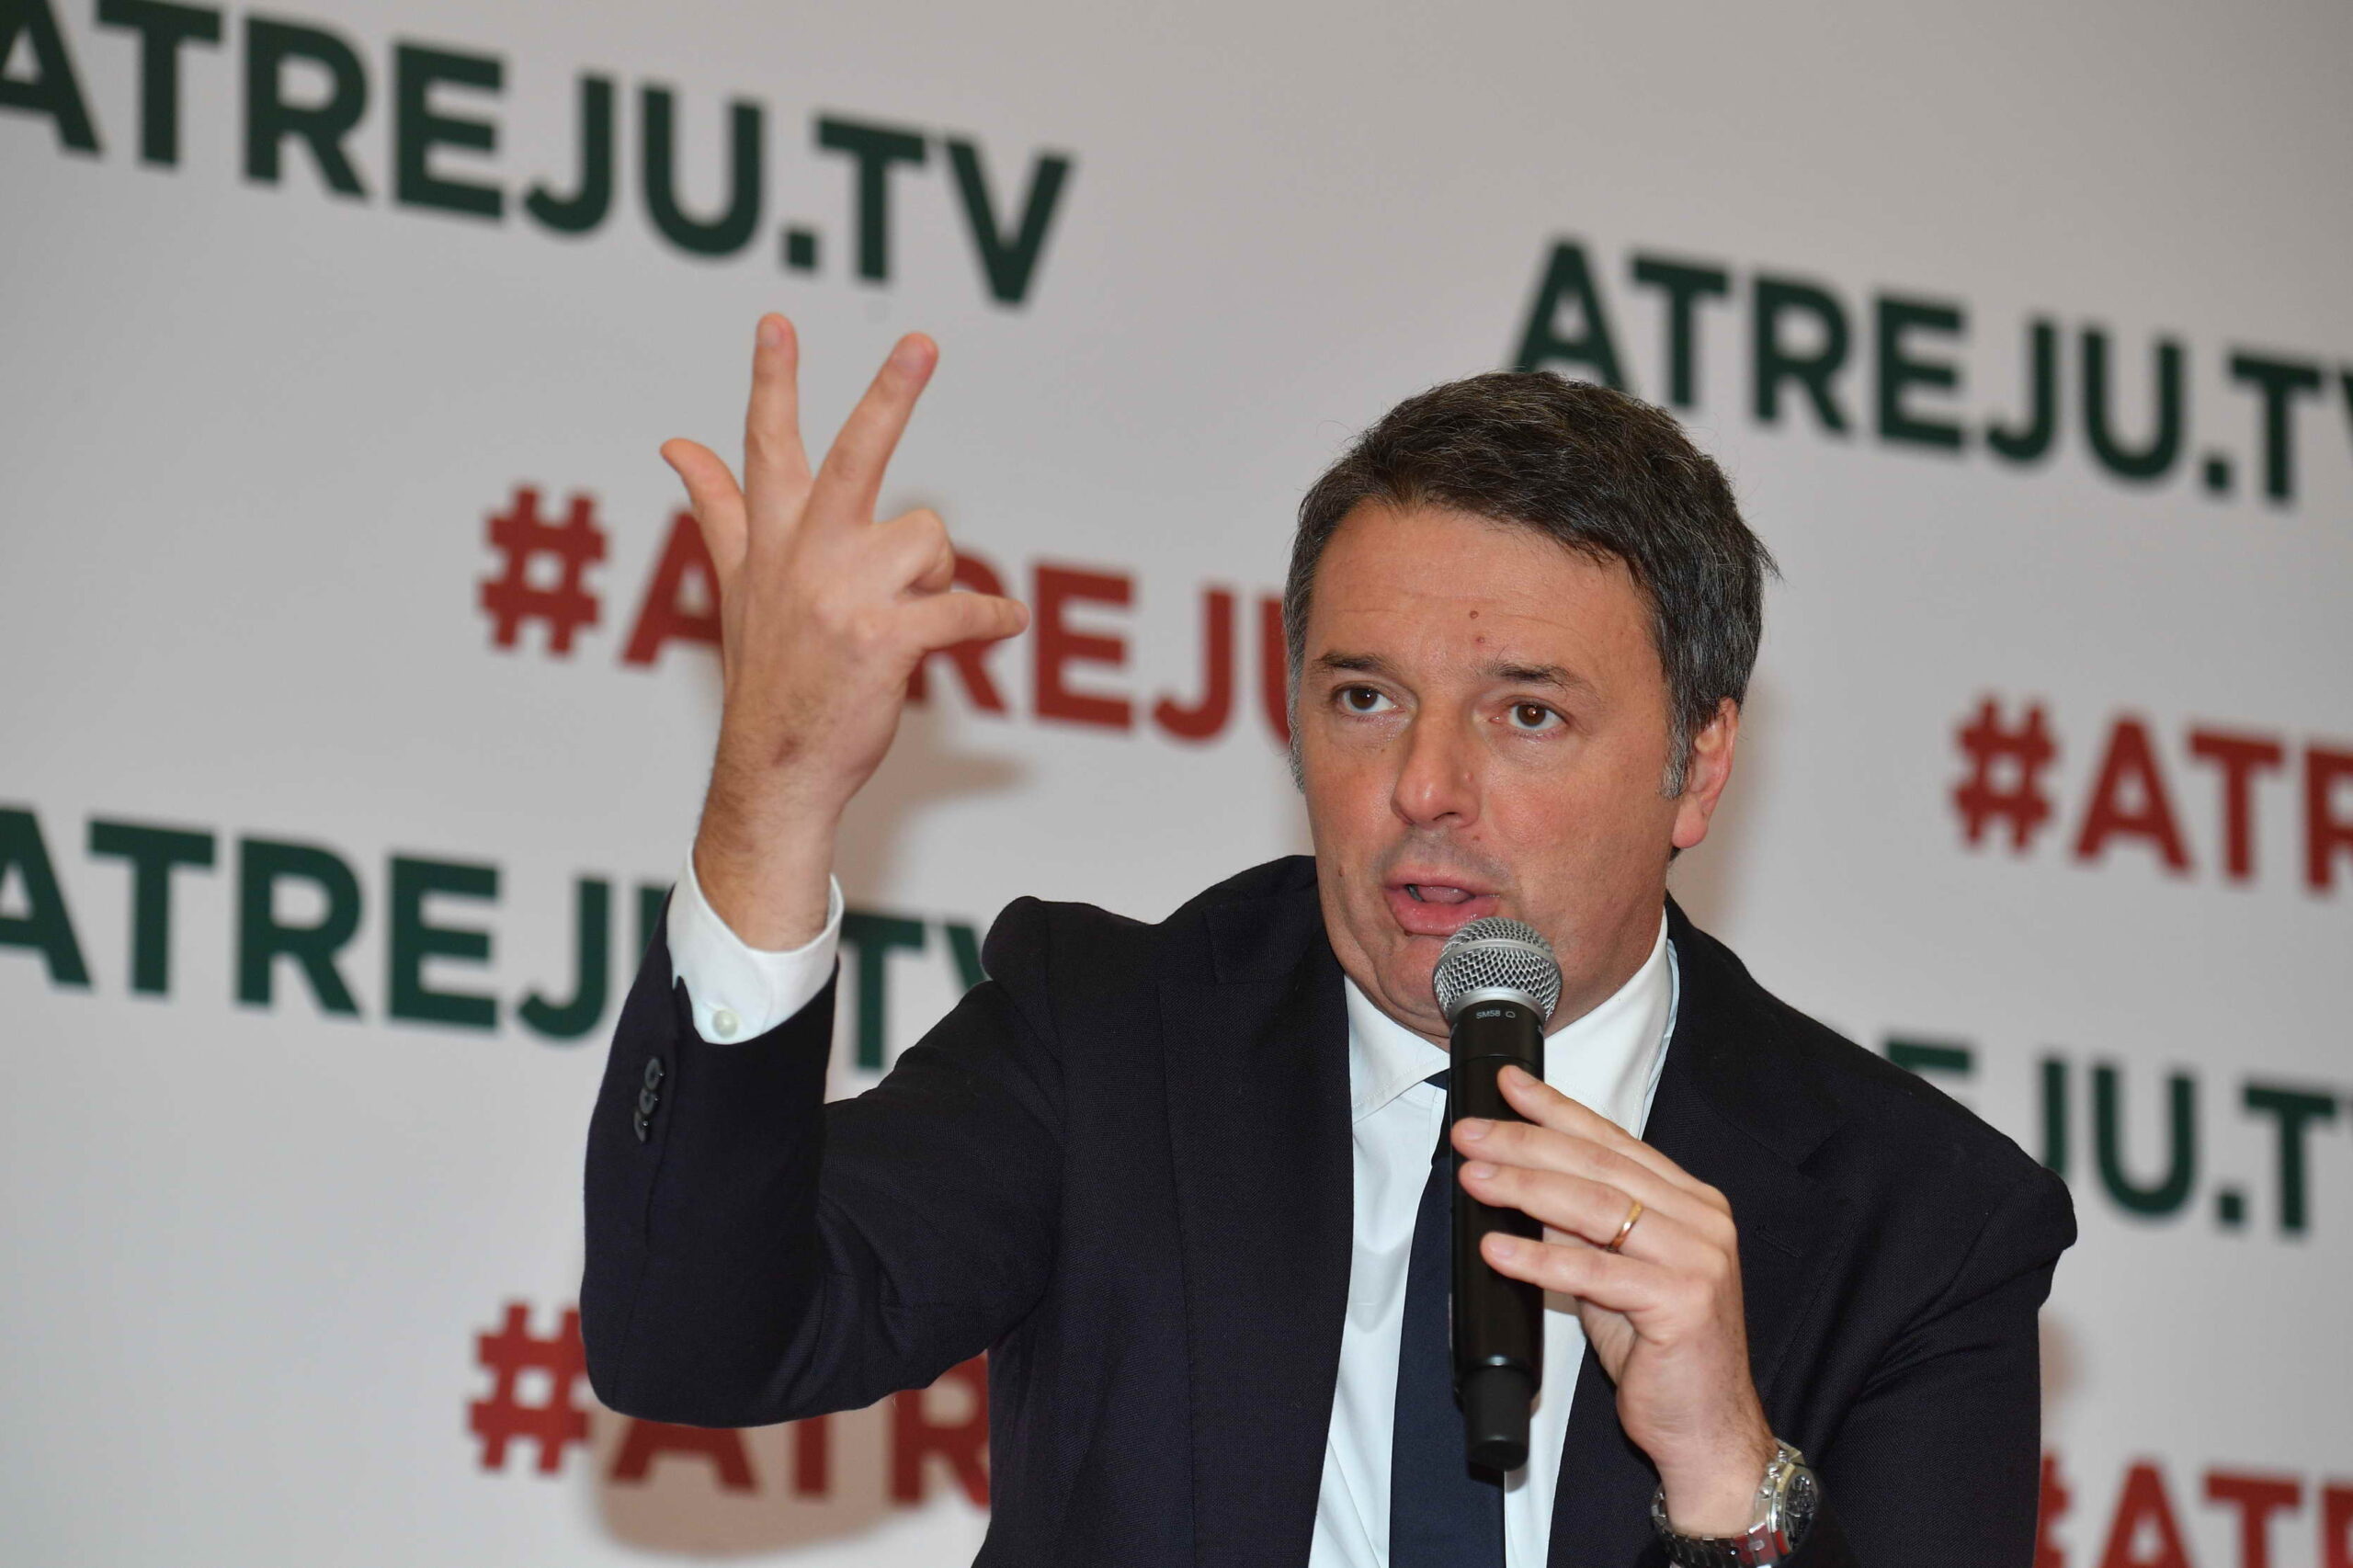 Europee, Renzi: "Giorgia Meloni commette un tragico errore e mette l'Italia dalla parte sbagliata con le estreme destre"